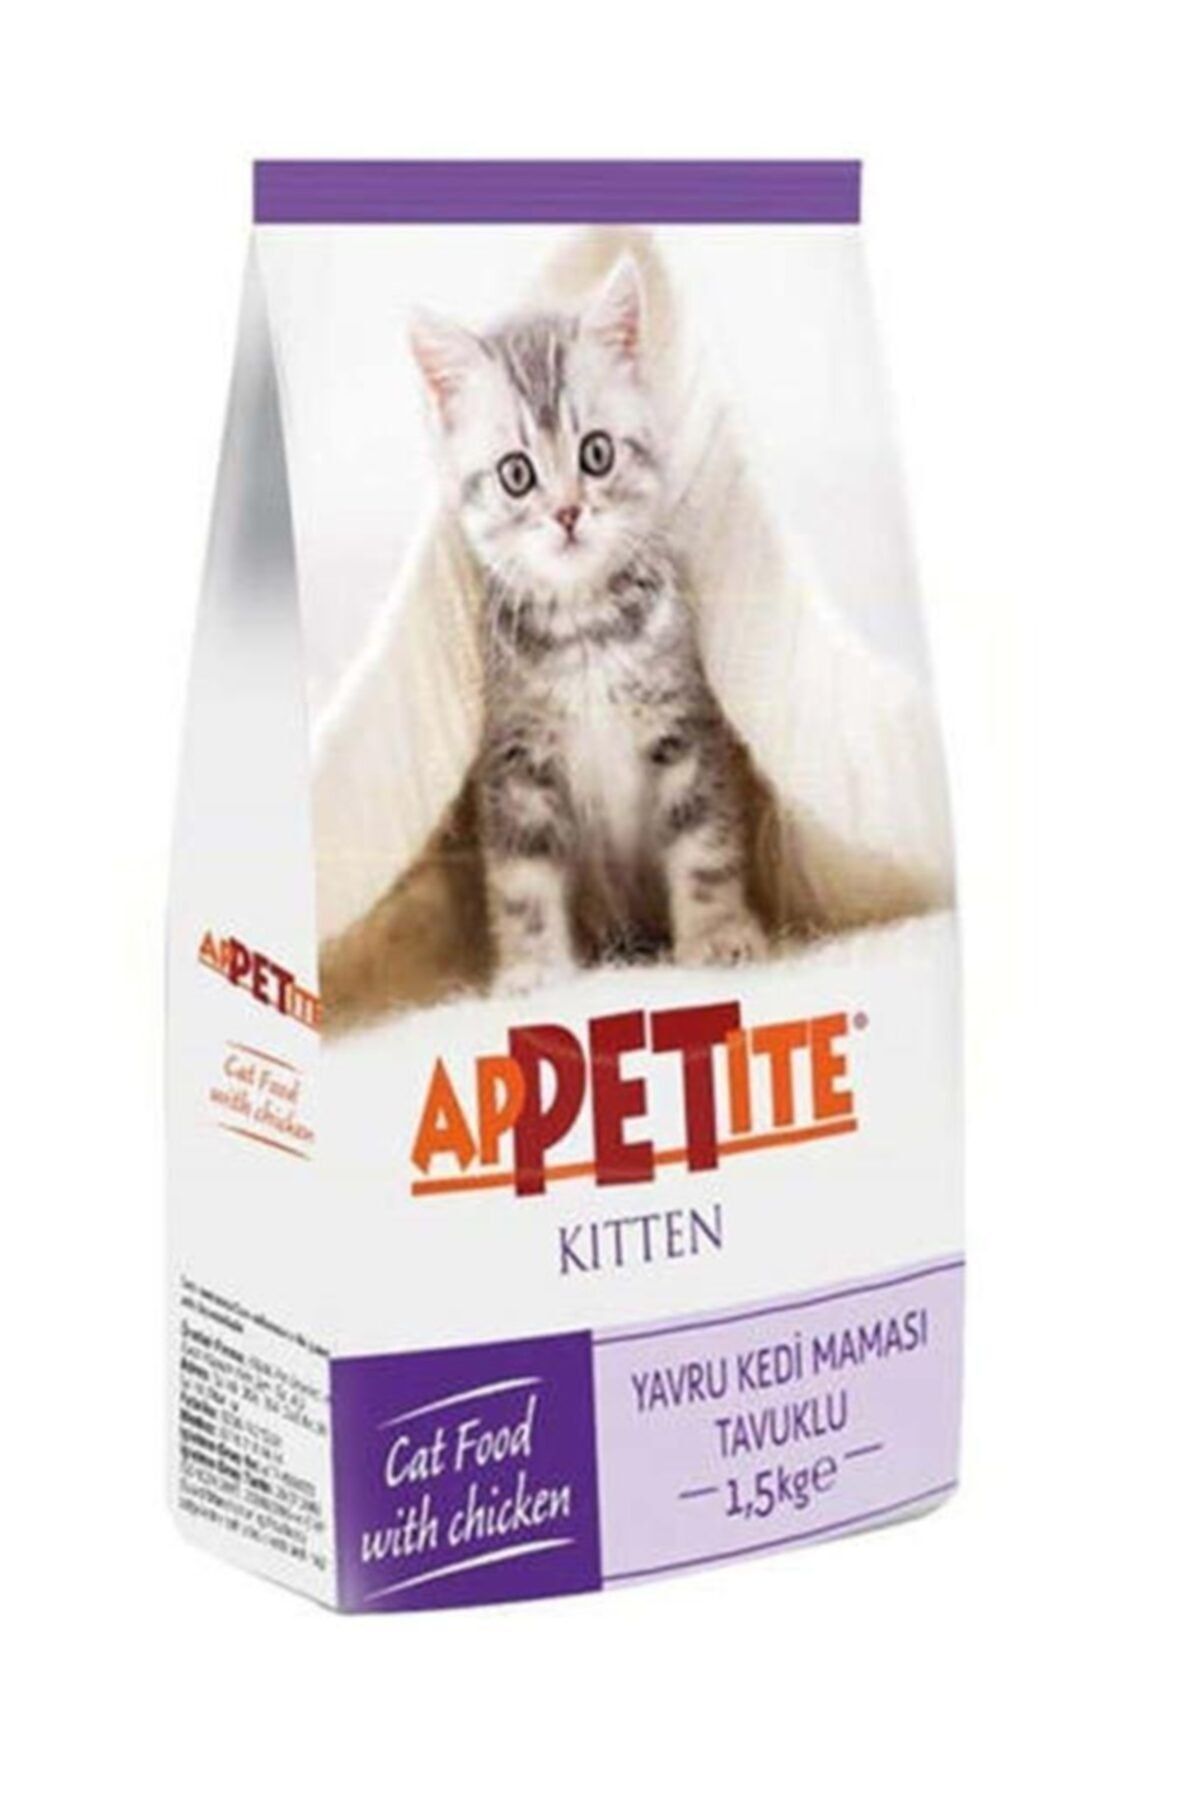 Appetite Kitten Tavuk Etli 1.5 Kg Yavru Kedi Maması